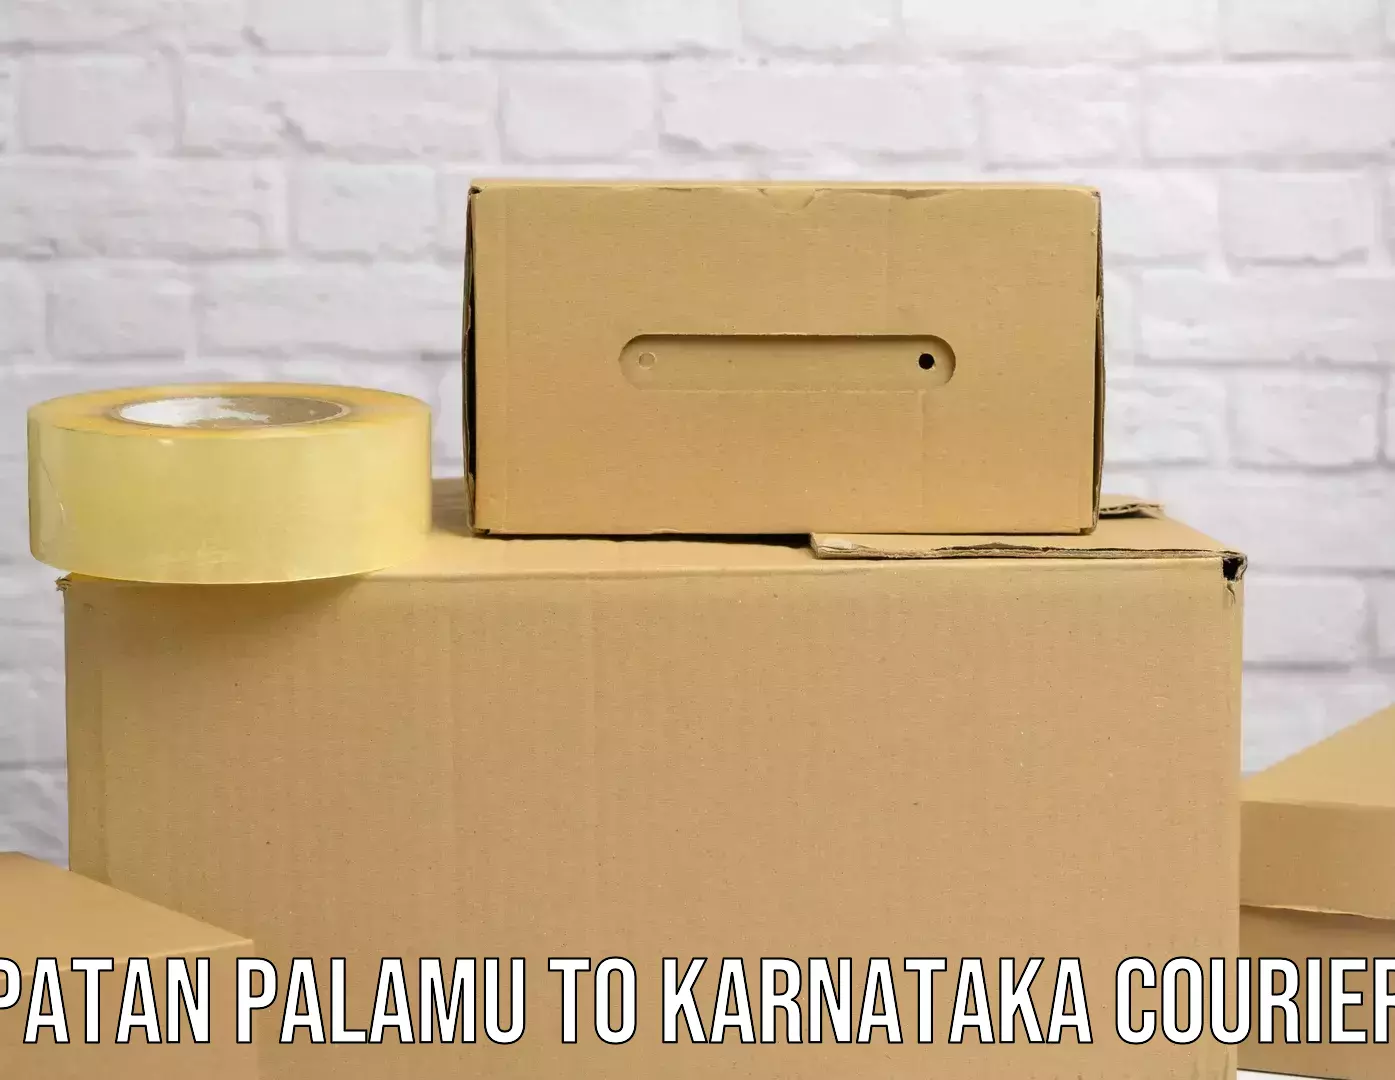 Individual parcel service Patan Palamu to Rattihalli